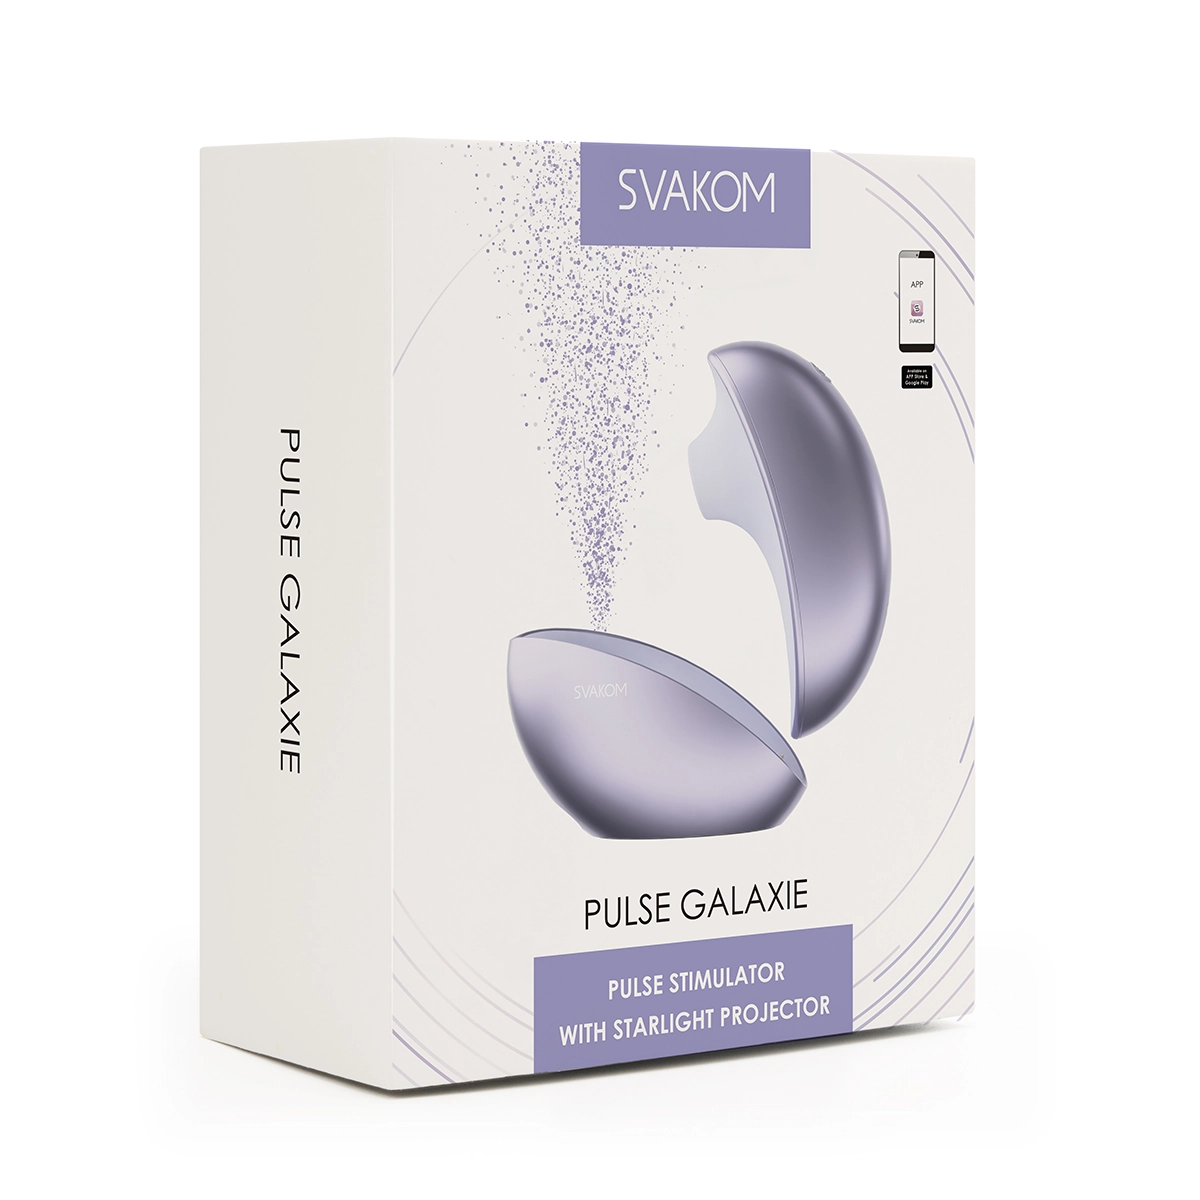 Bỏ sỉ Svakom Pulse Galaxie phát sáng máy bú hút thổi kích thích âm vật kết nối App có tốt không?